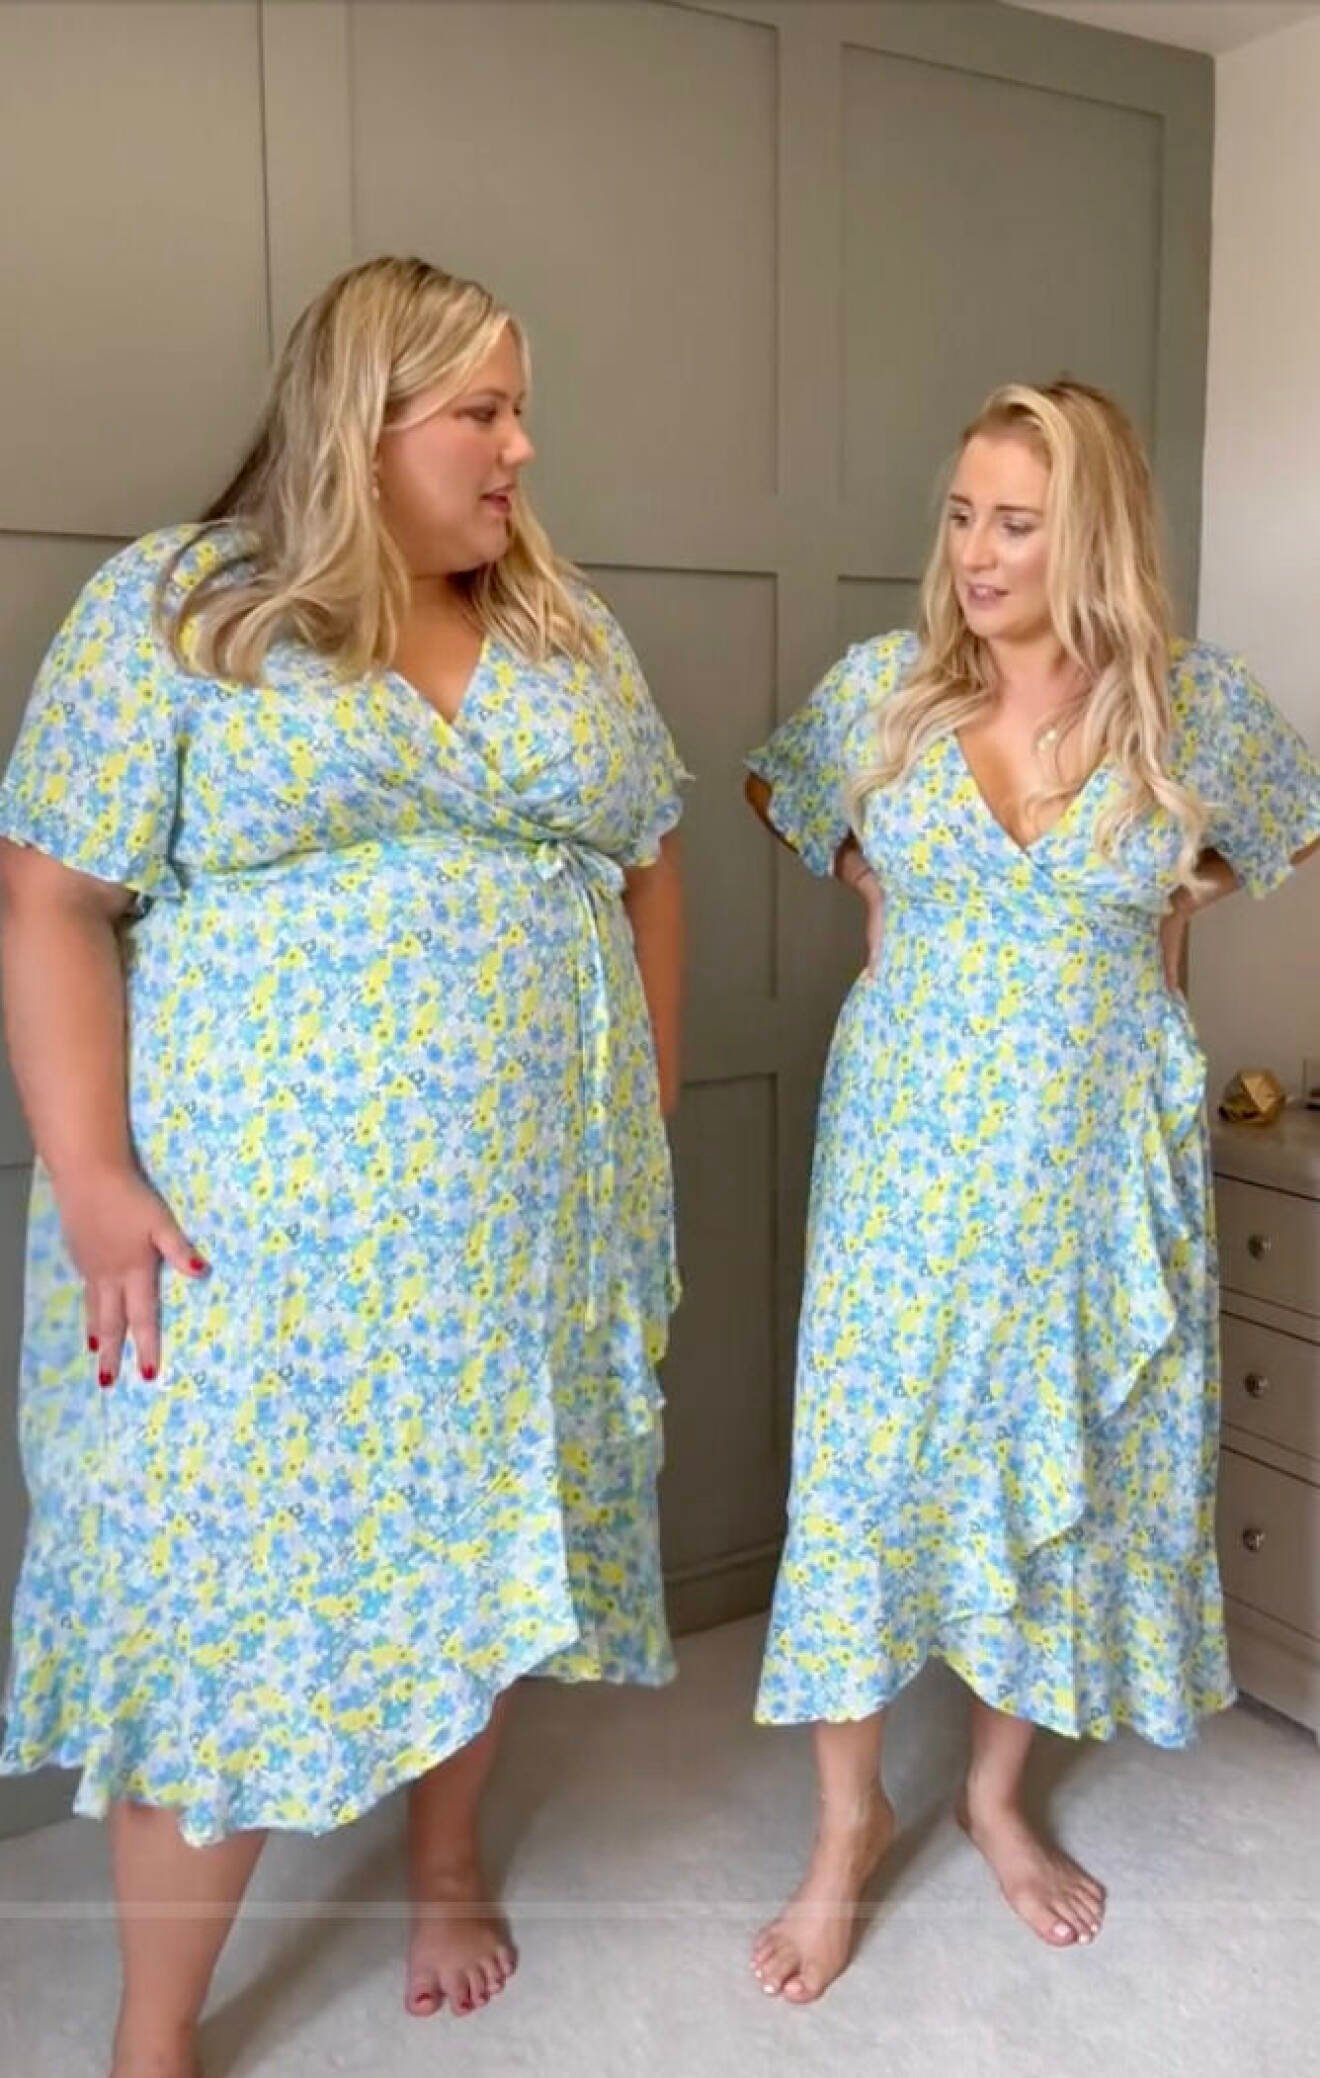 Lottie och Laura har olika storlekar, och testar likadana kläder.